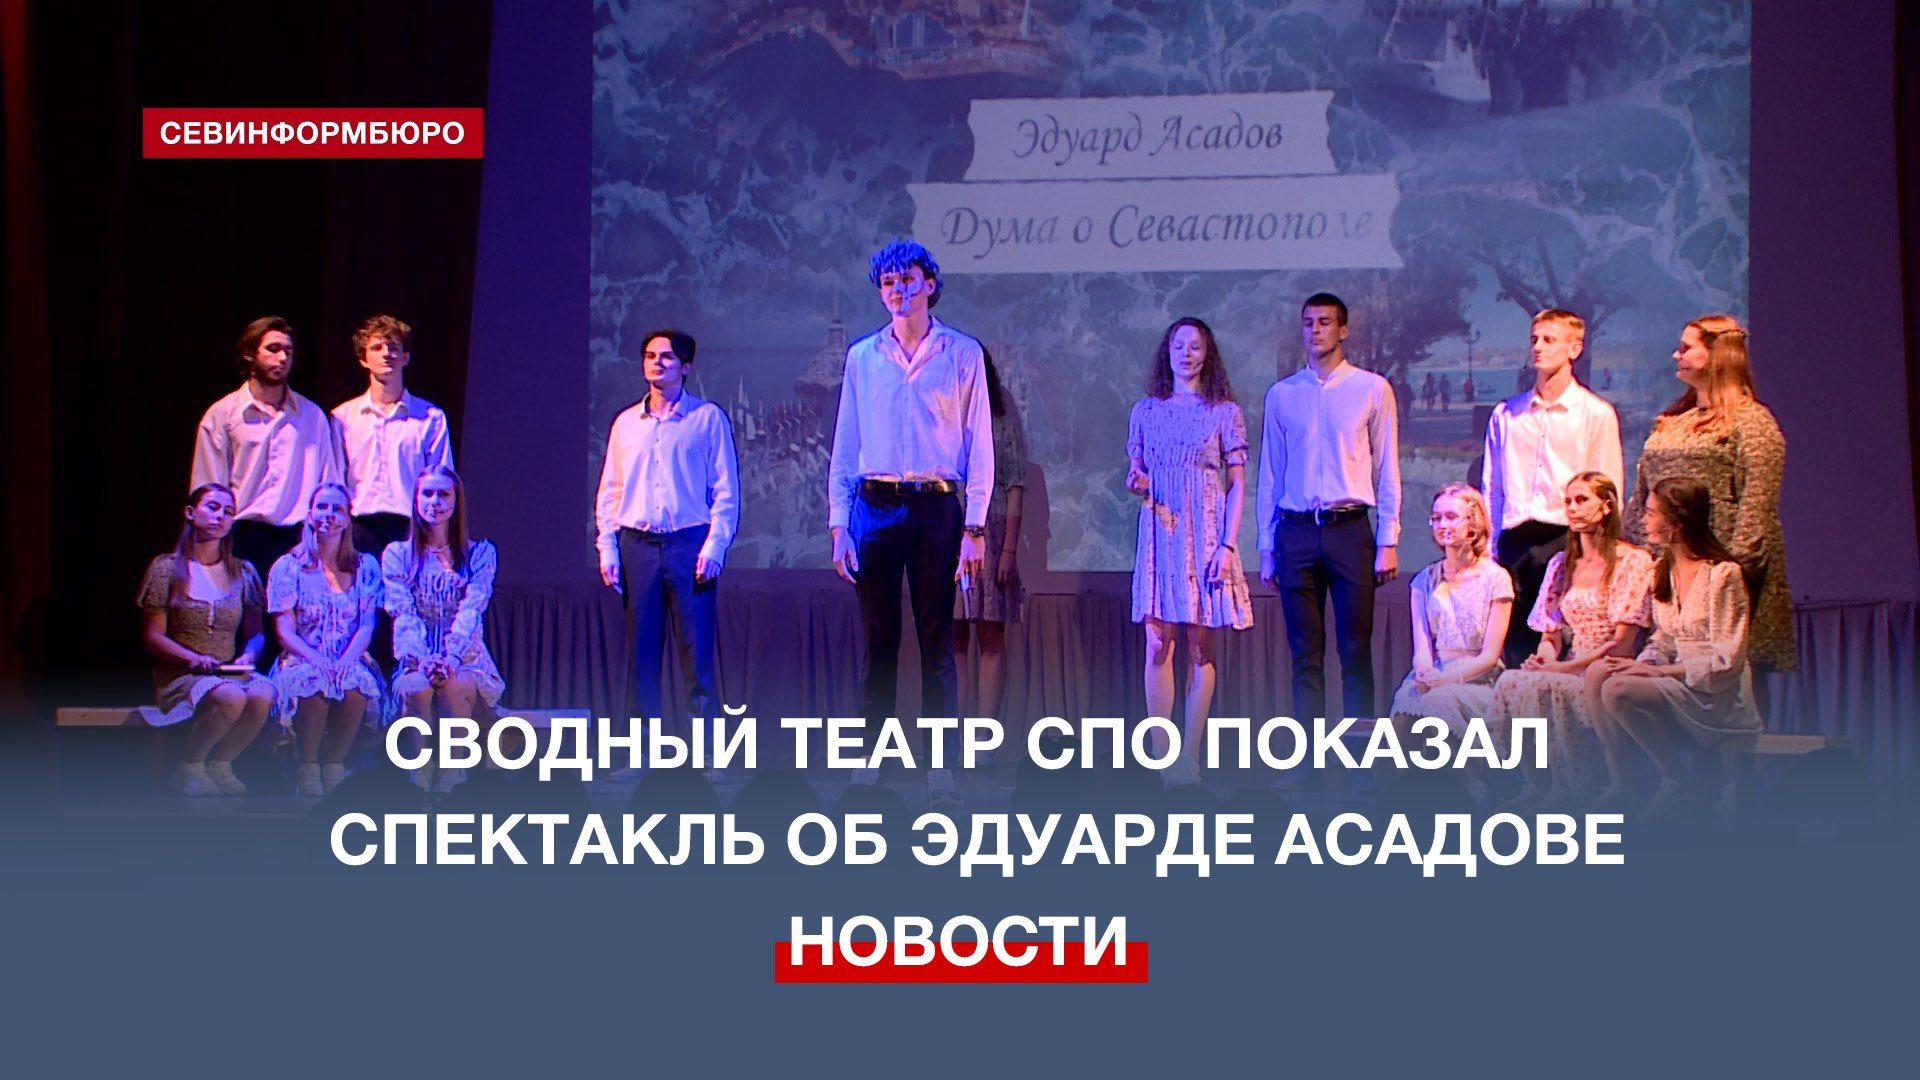 Сводный студенческий театр «Молодая гвардия» представил спектакль об Эдуарде Асадове